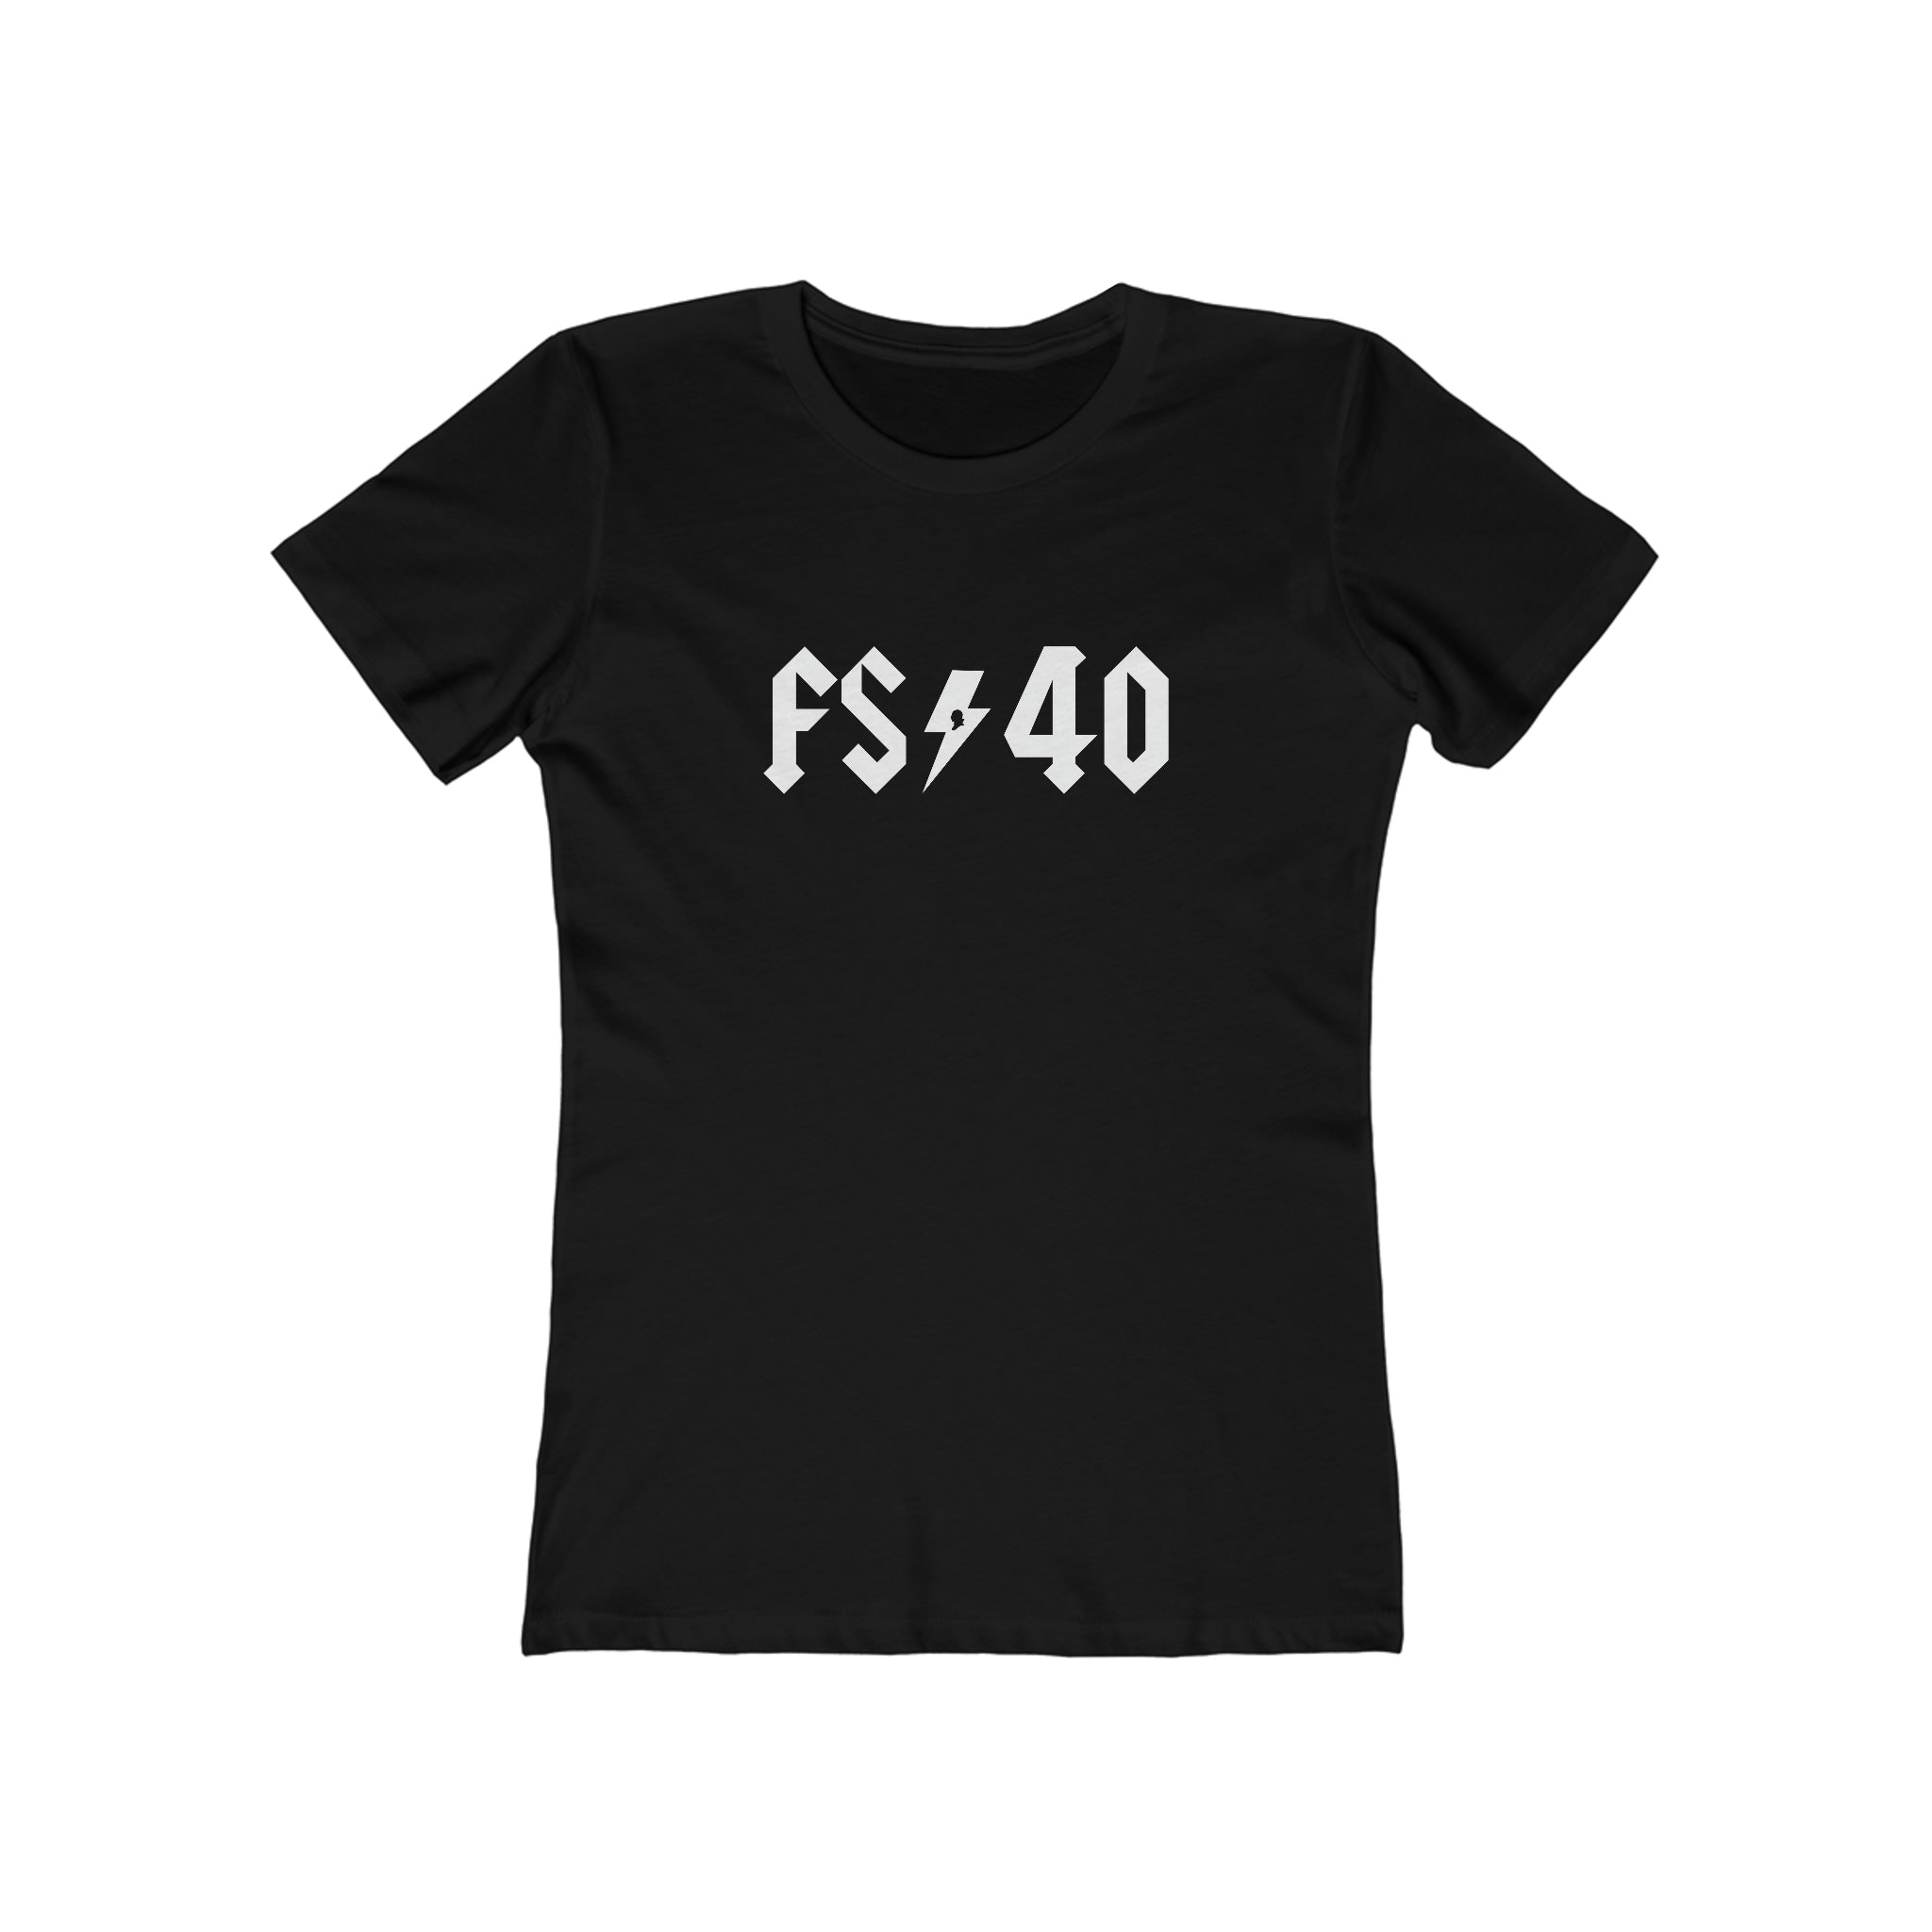 FS 40 Women's Shirt (Fed Soc)